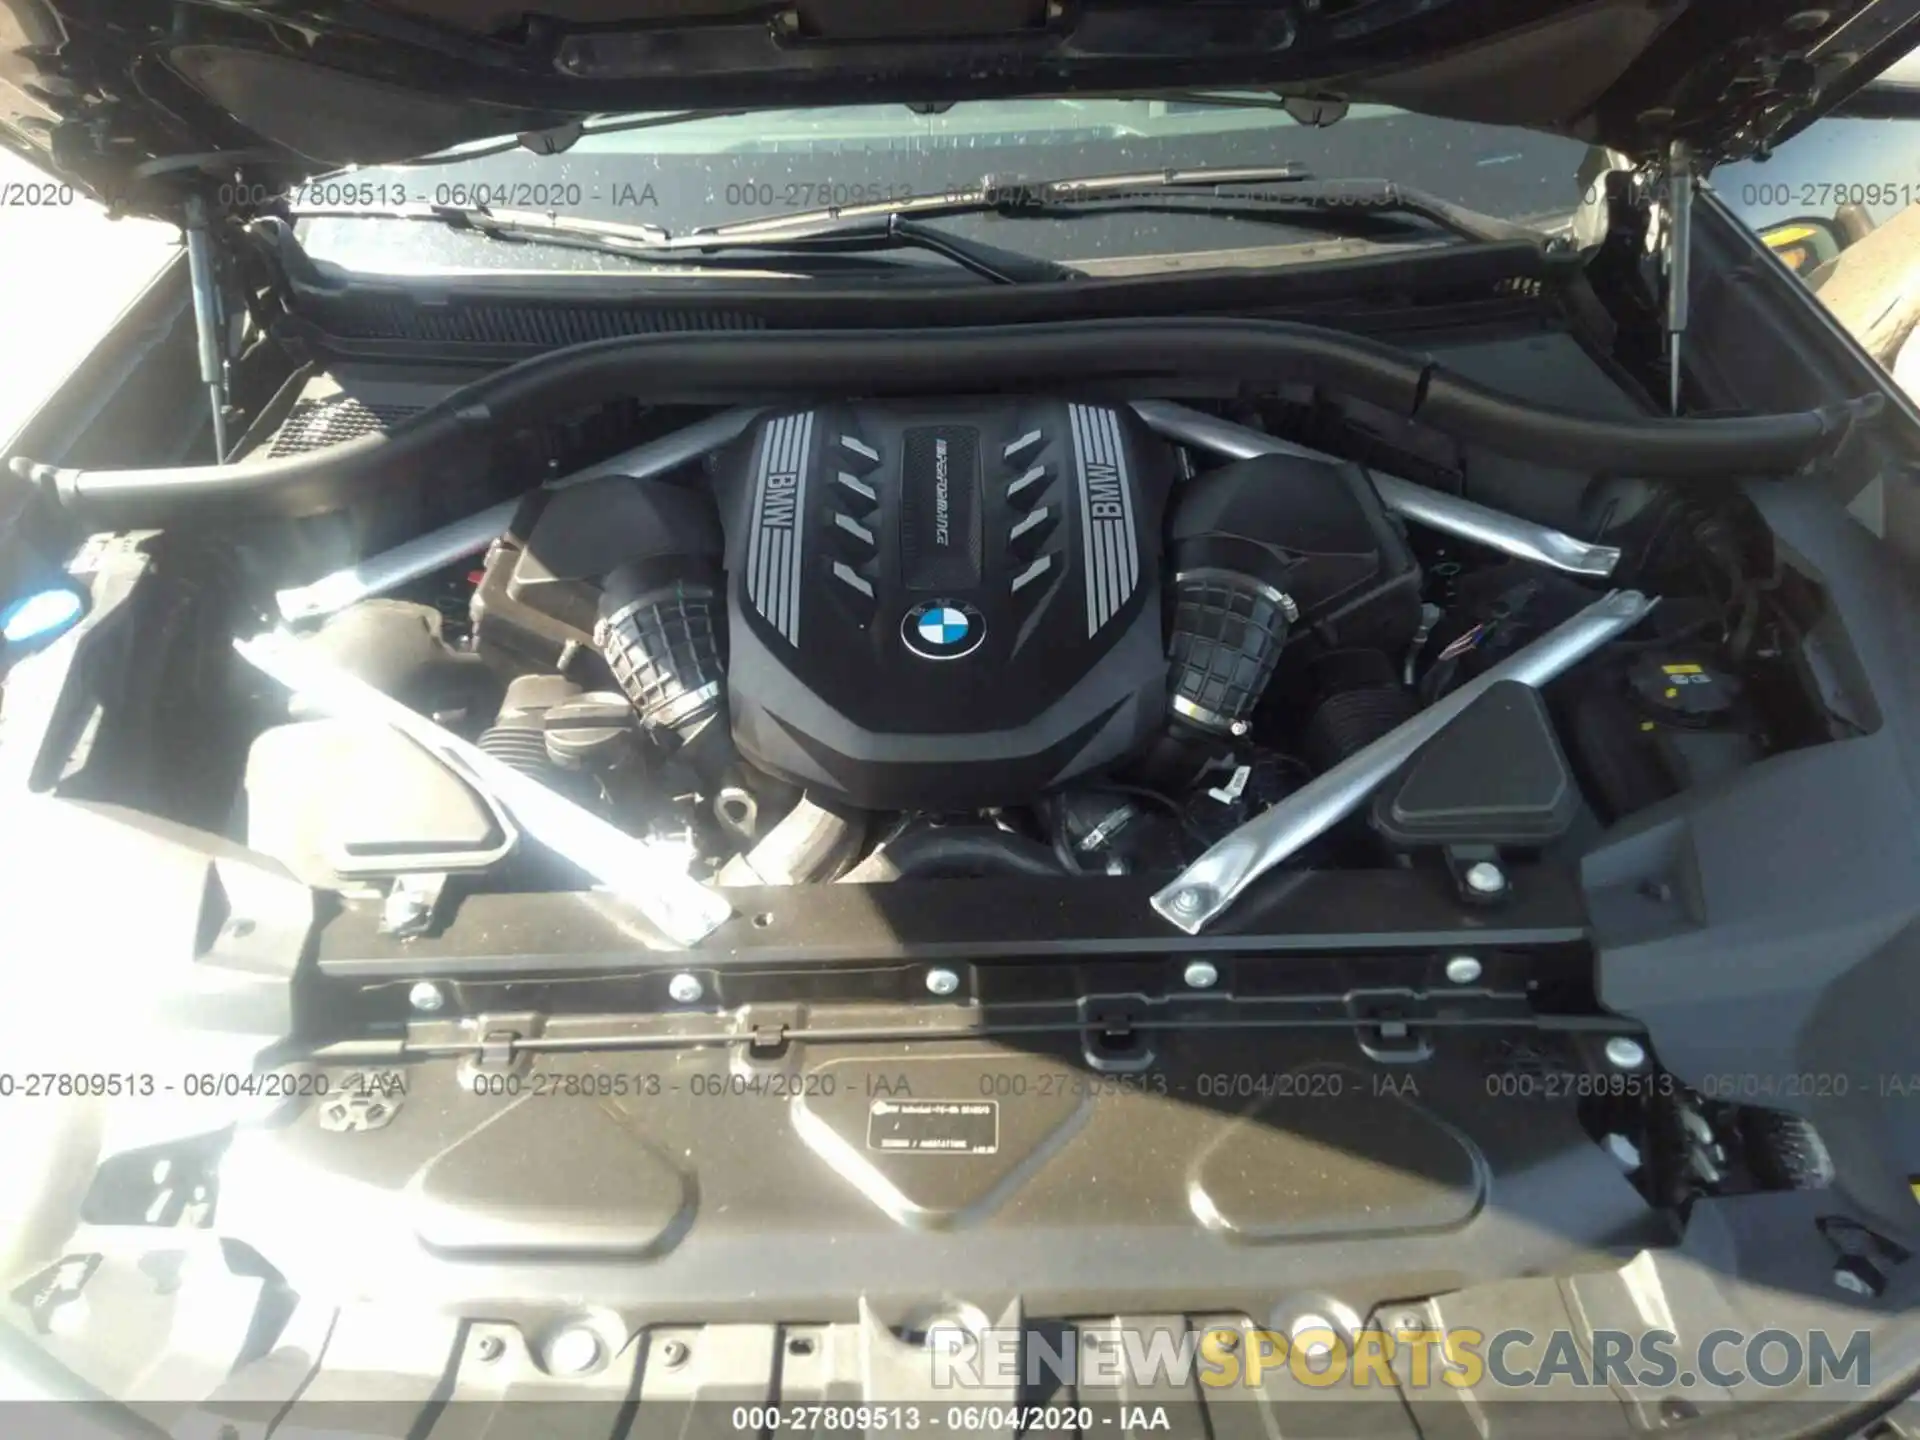 10 Photograph of a damaged car 5UXCX6C06L9****** BMW X7 2020